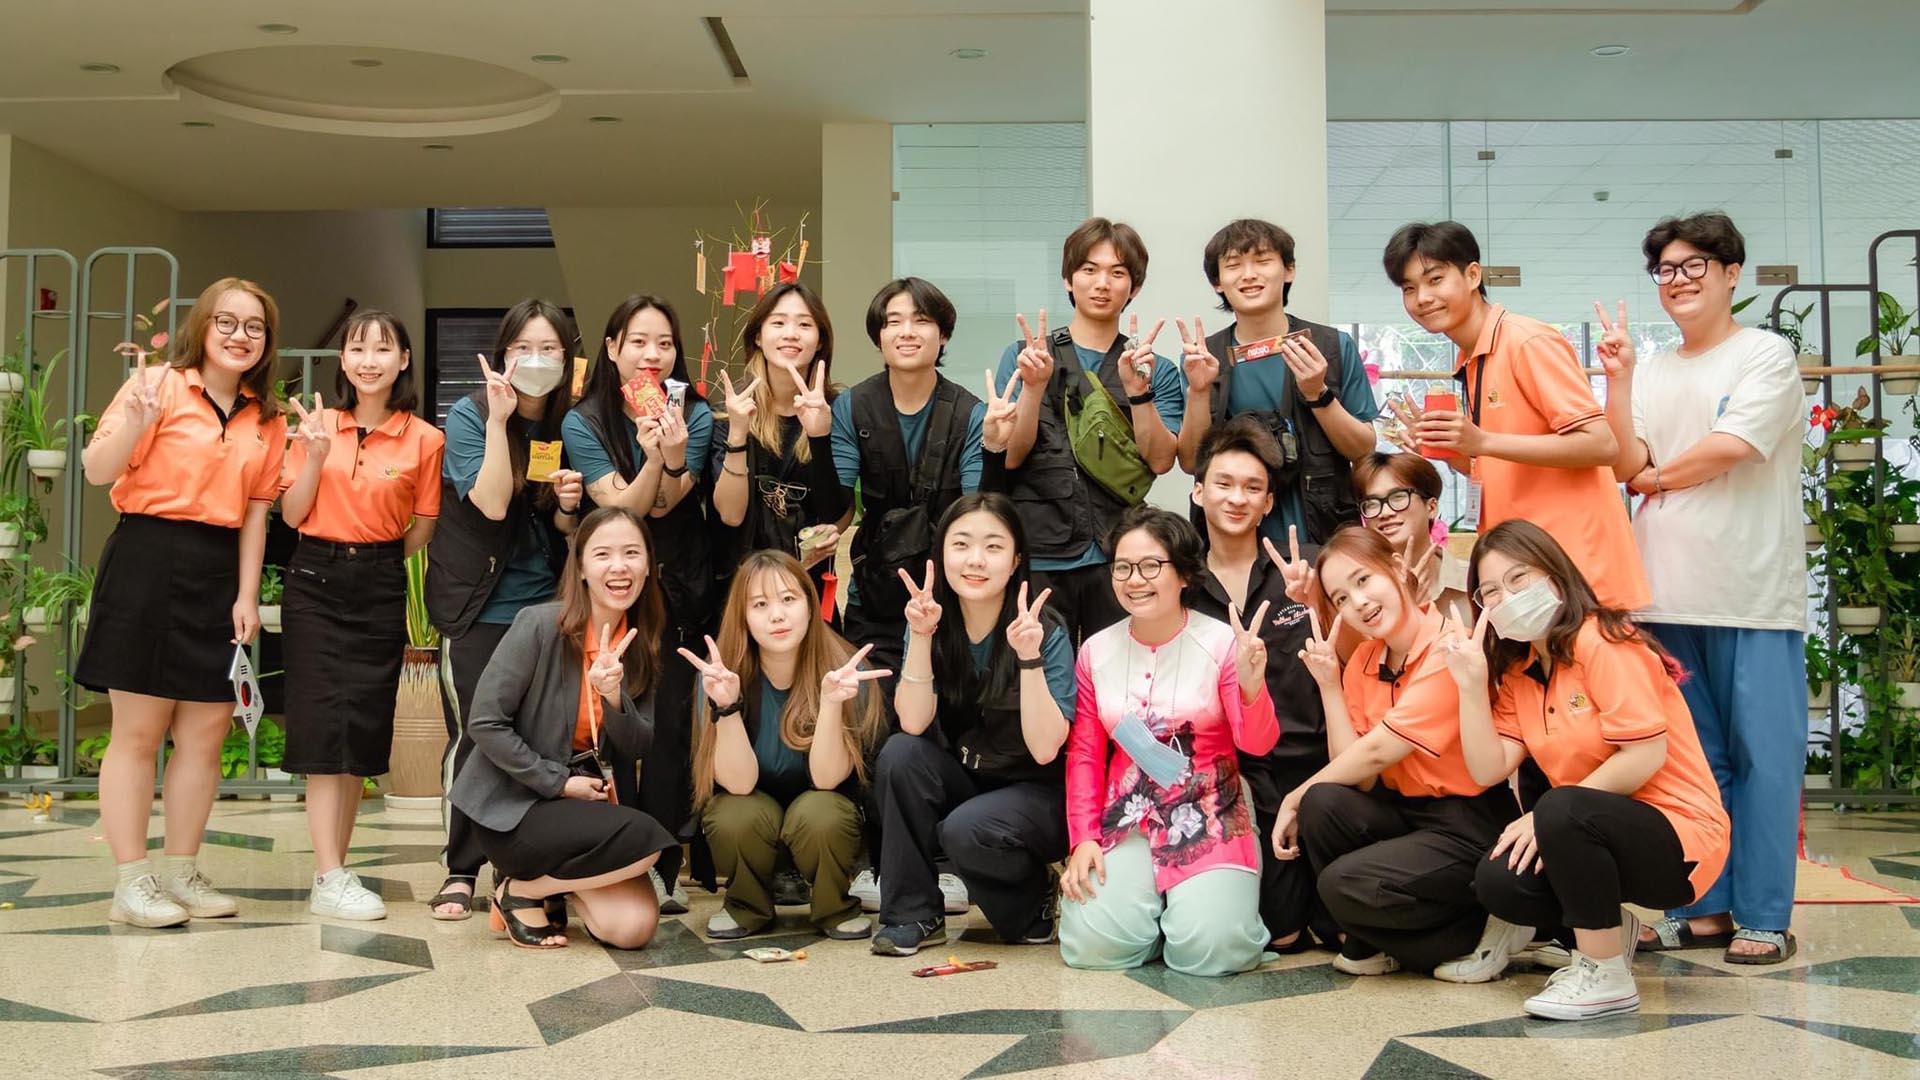 Đại học FPT Cần Thơ chào đón đoàn sinh viên Đại học Quốc gia Pusan đến học tập và giao lưu